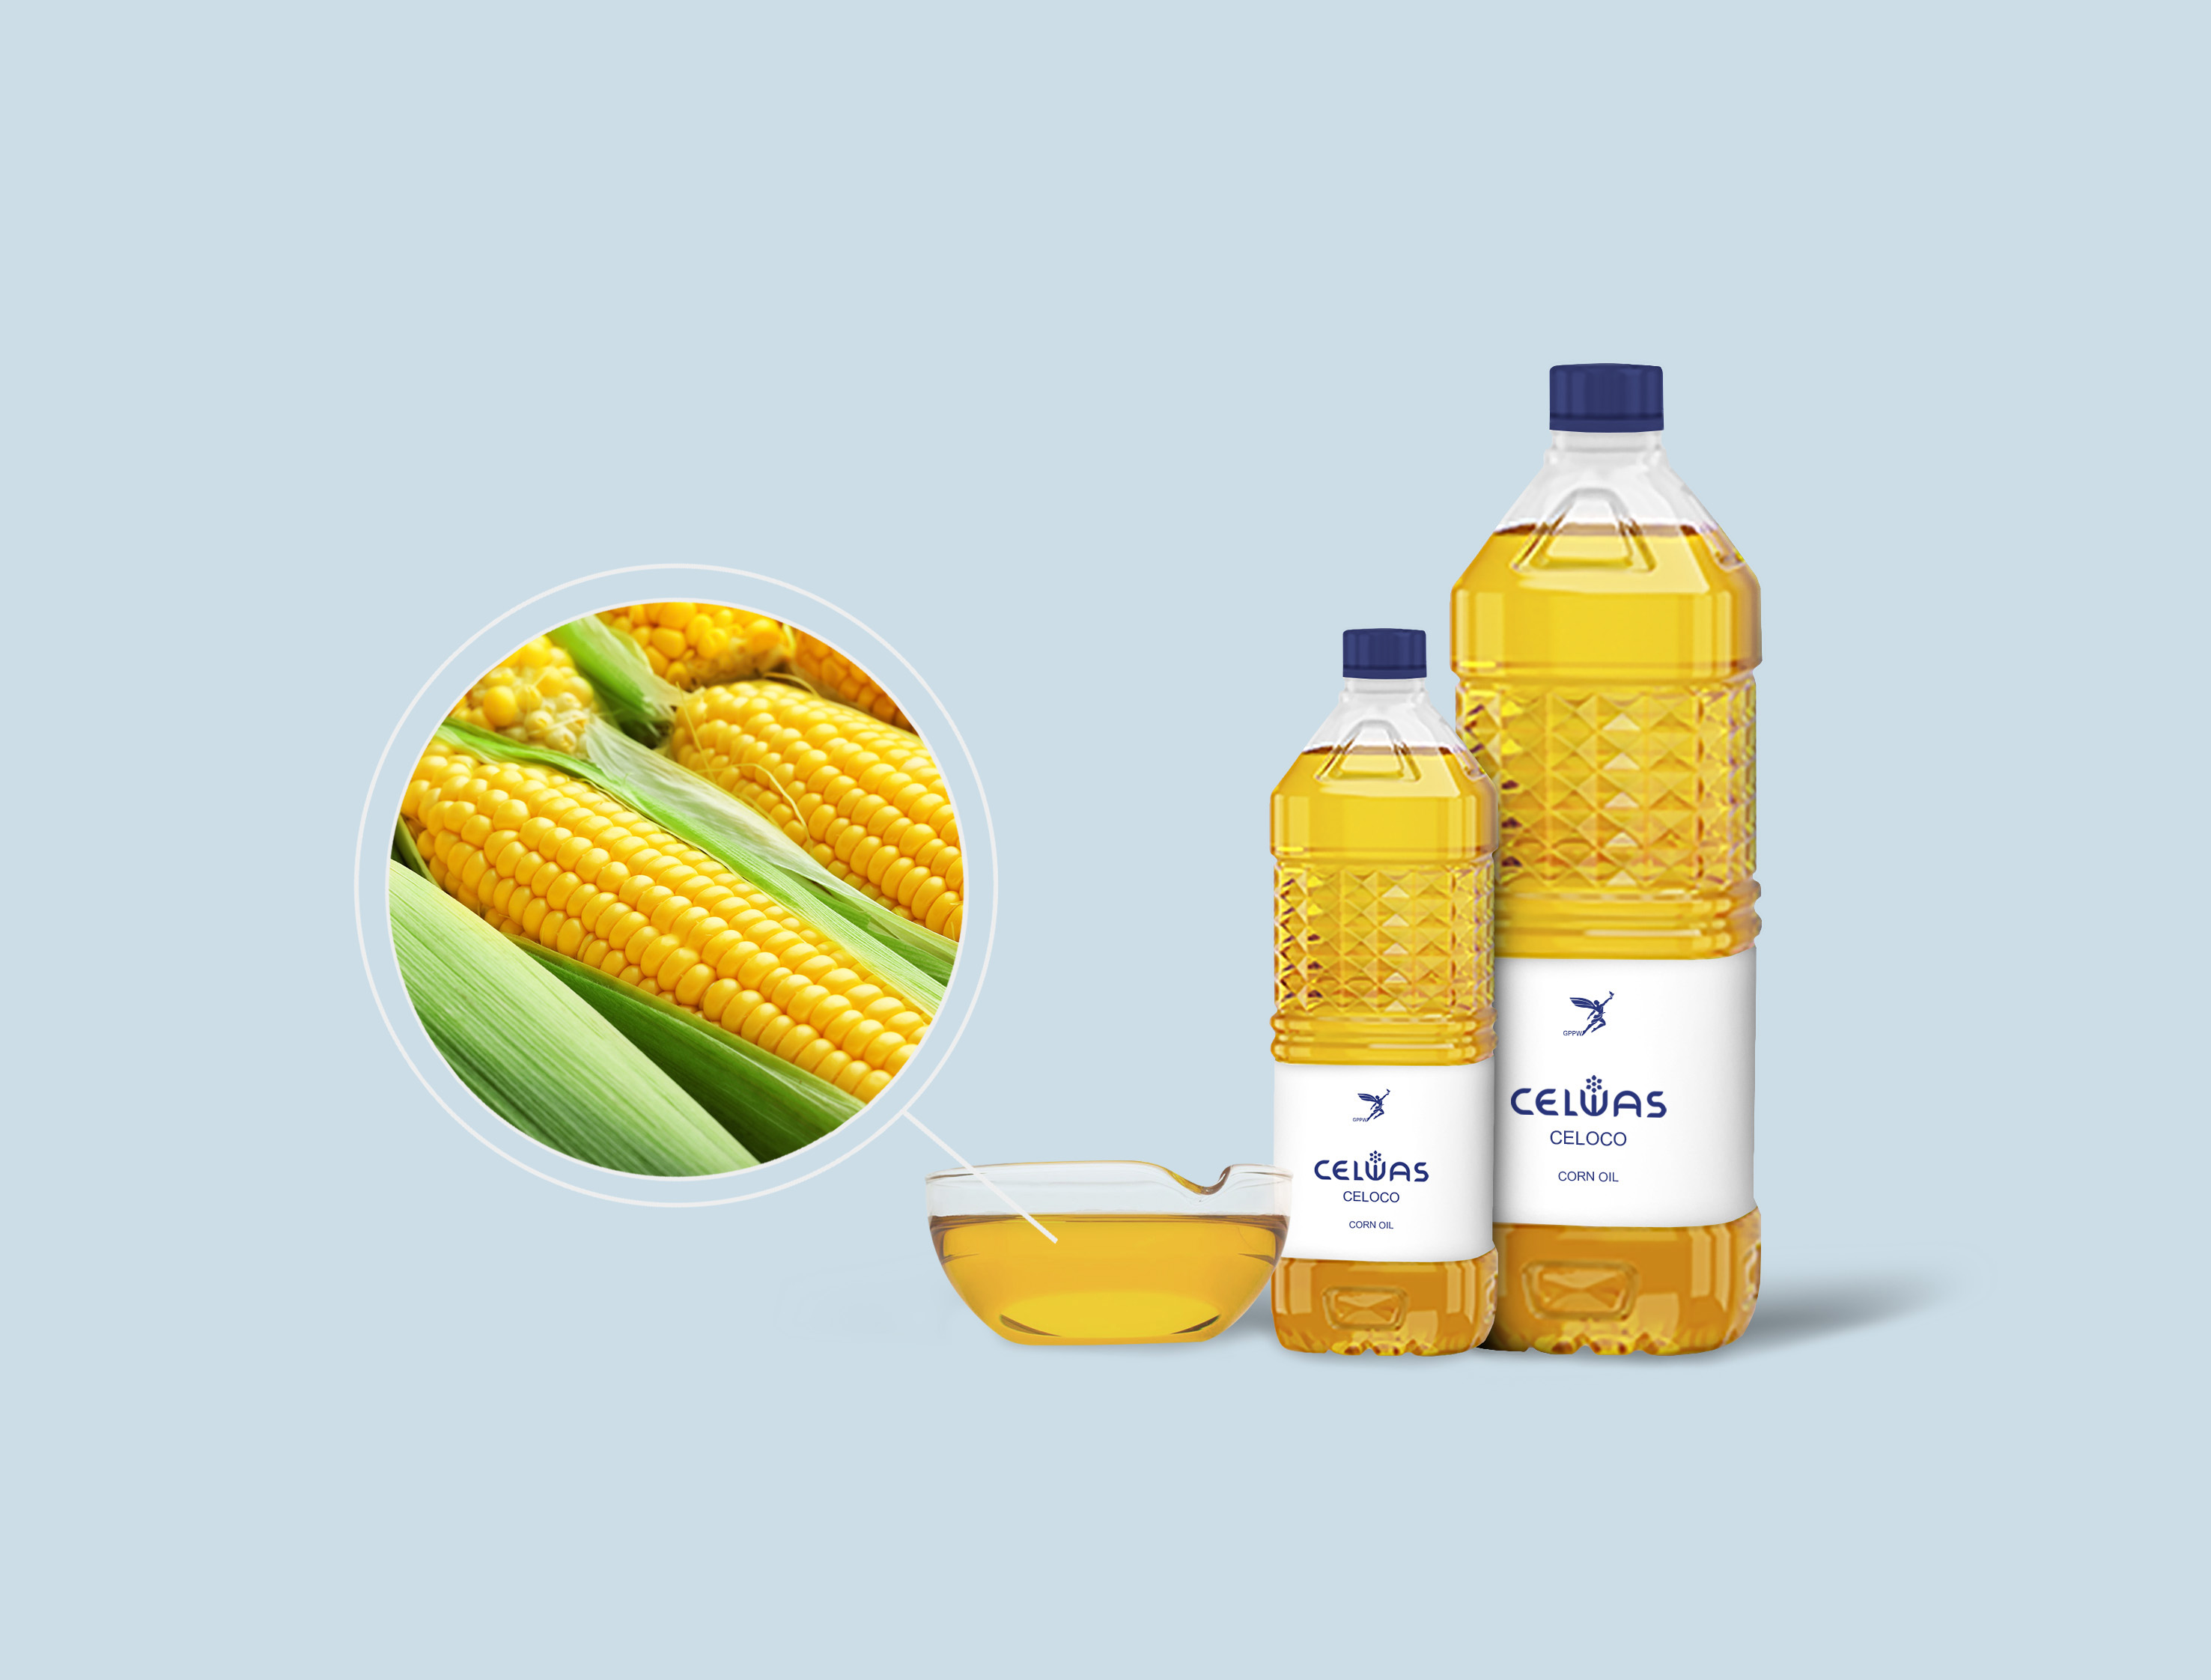 CELOCO<br />corn oil